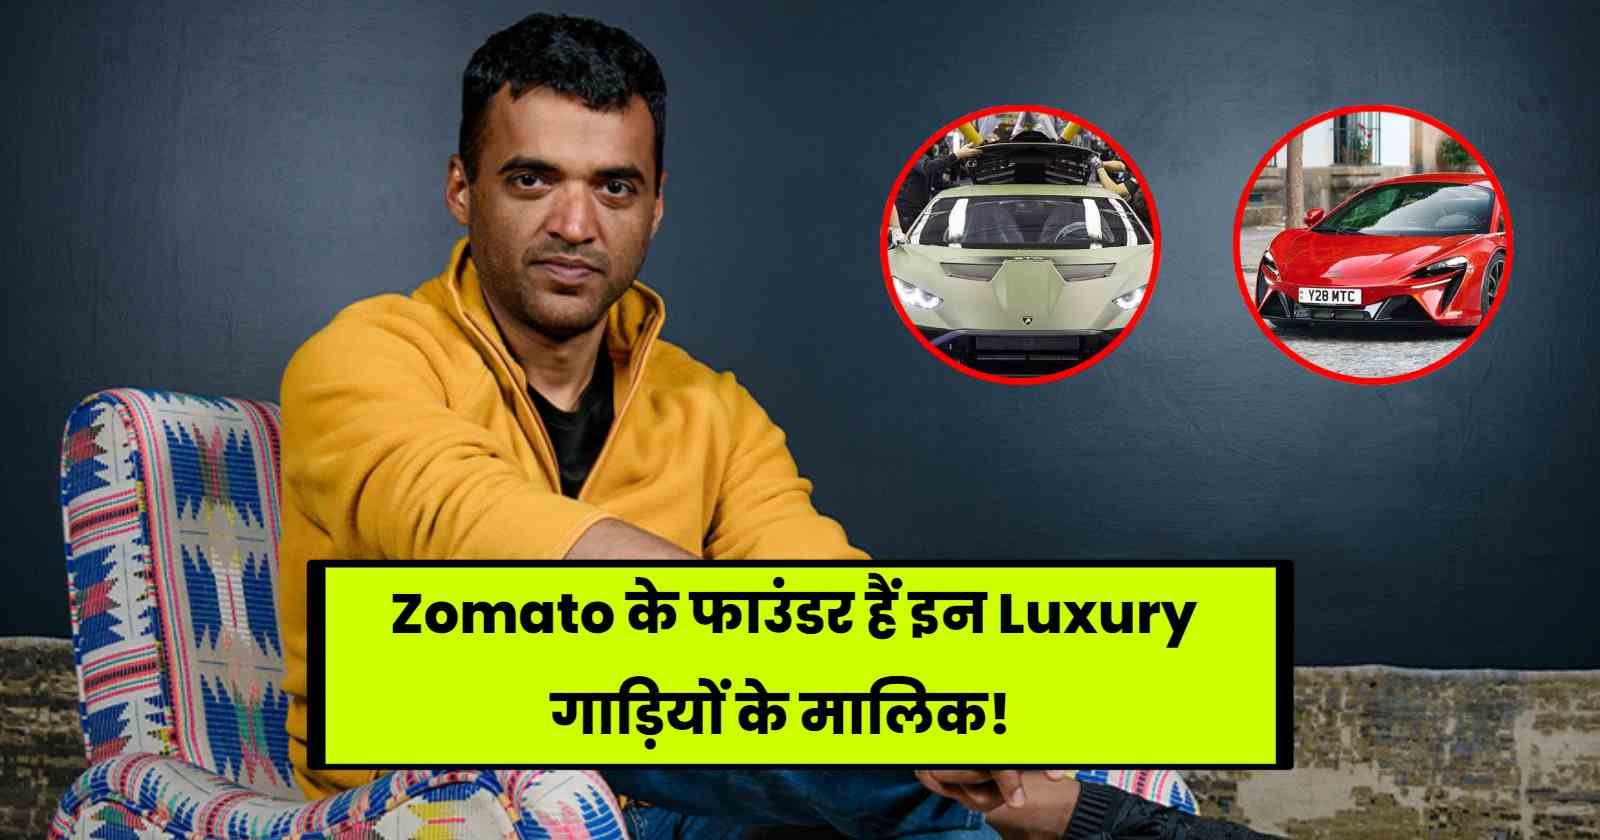 Deepinder Goyal Car Collection: Zomato